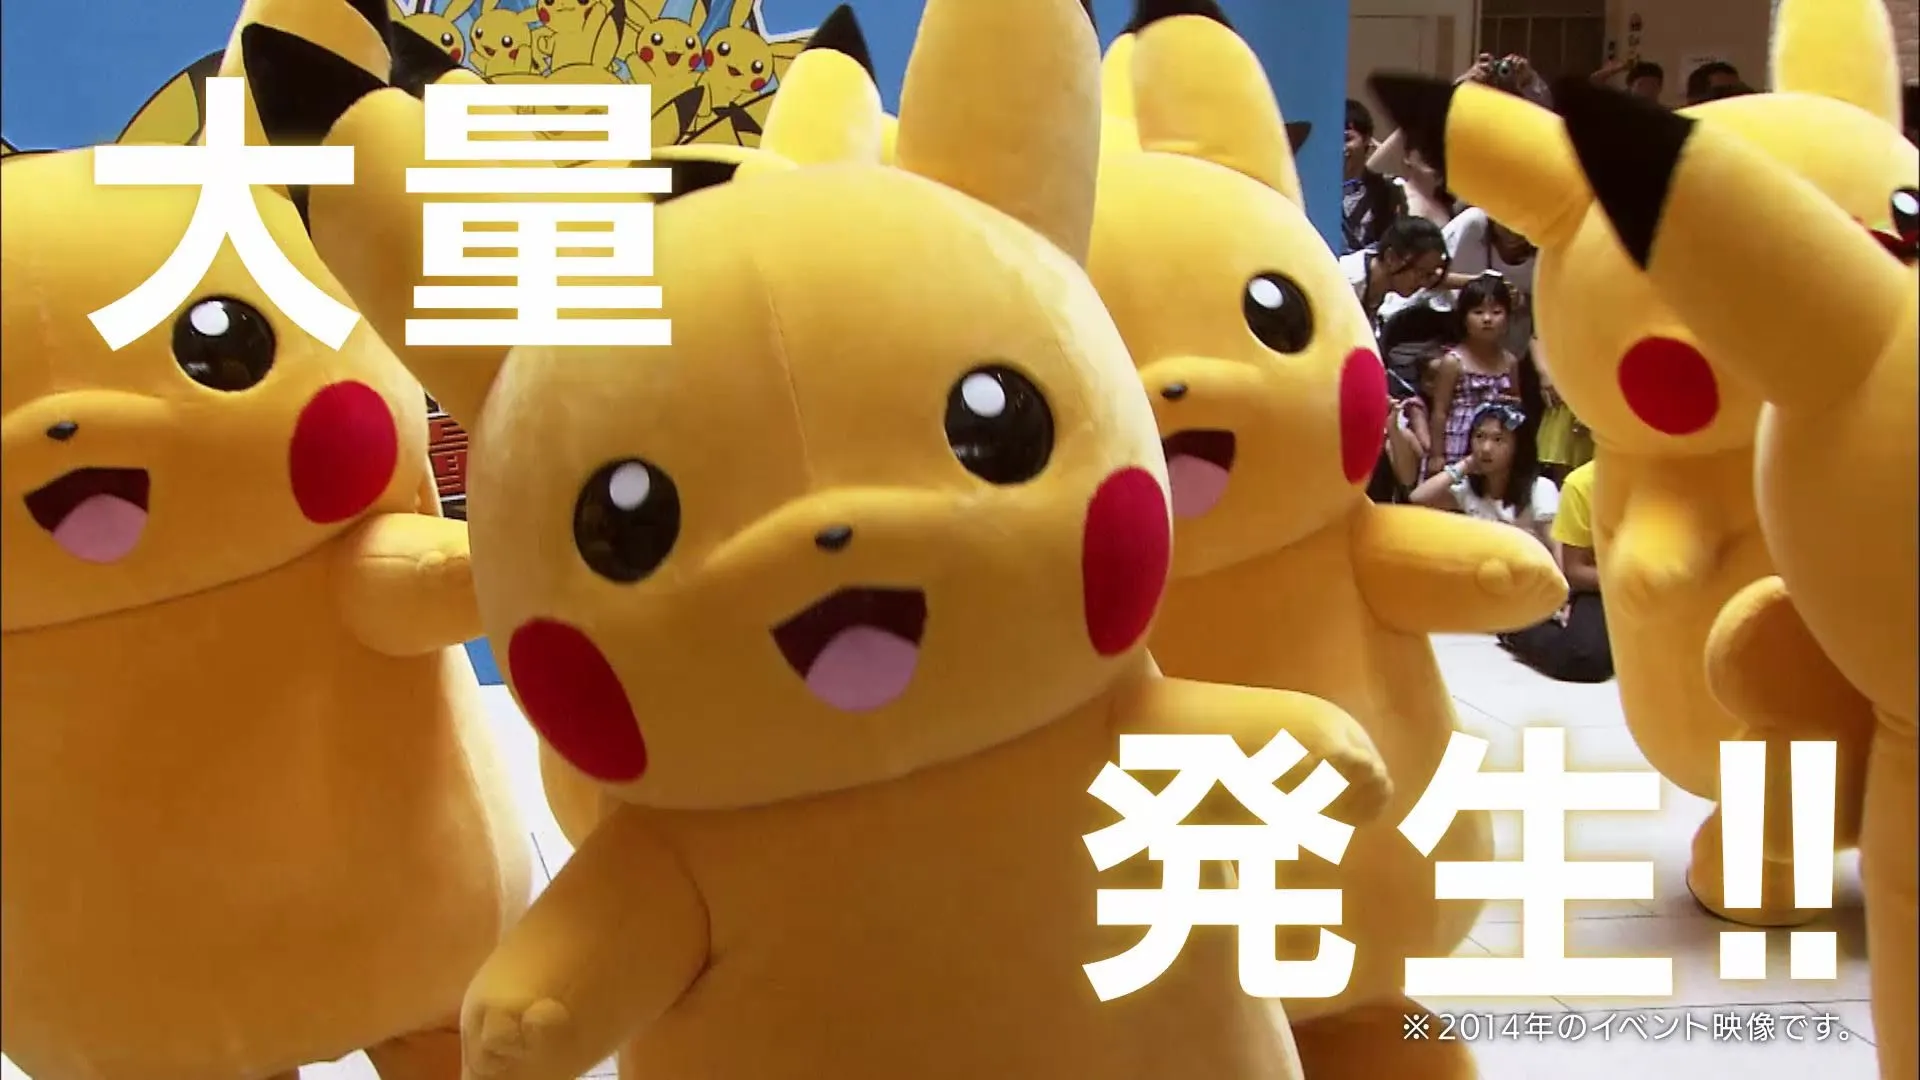 Pikachu invadirá Japón (Otra vez)